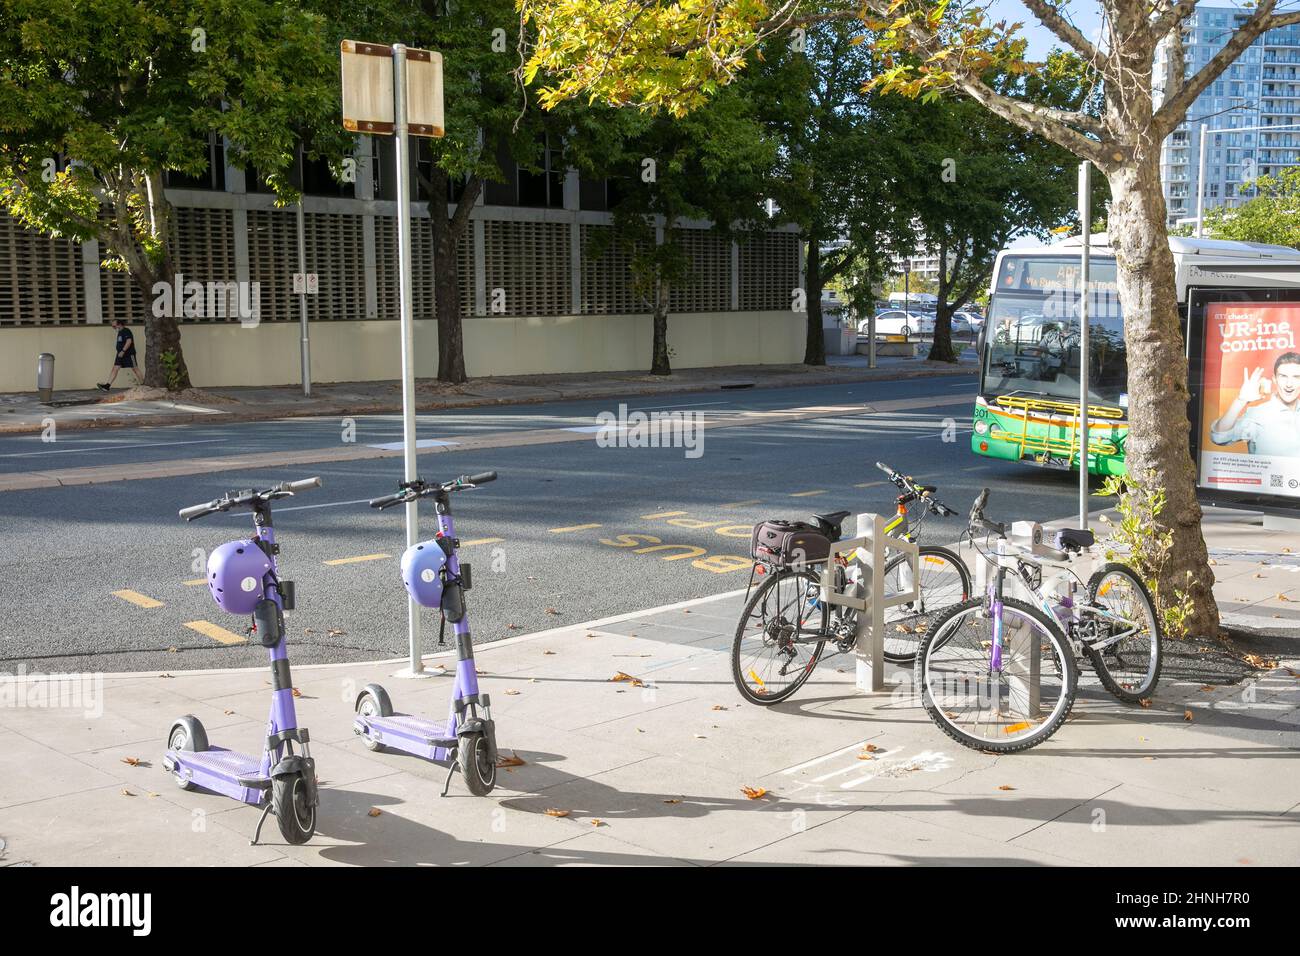 Canberra Bus im Stadtzentrum, geparkte Fahrräder und gemeinsame elektronische E-Scooter in der Nähe, ACT, Australien Stockfoto